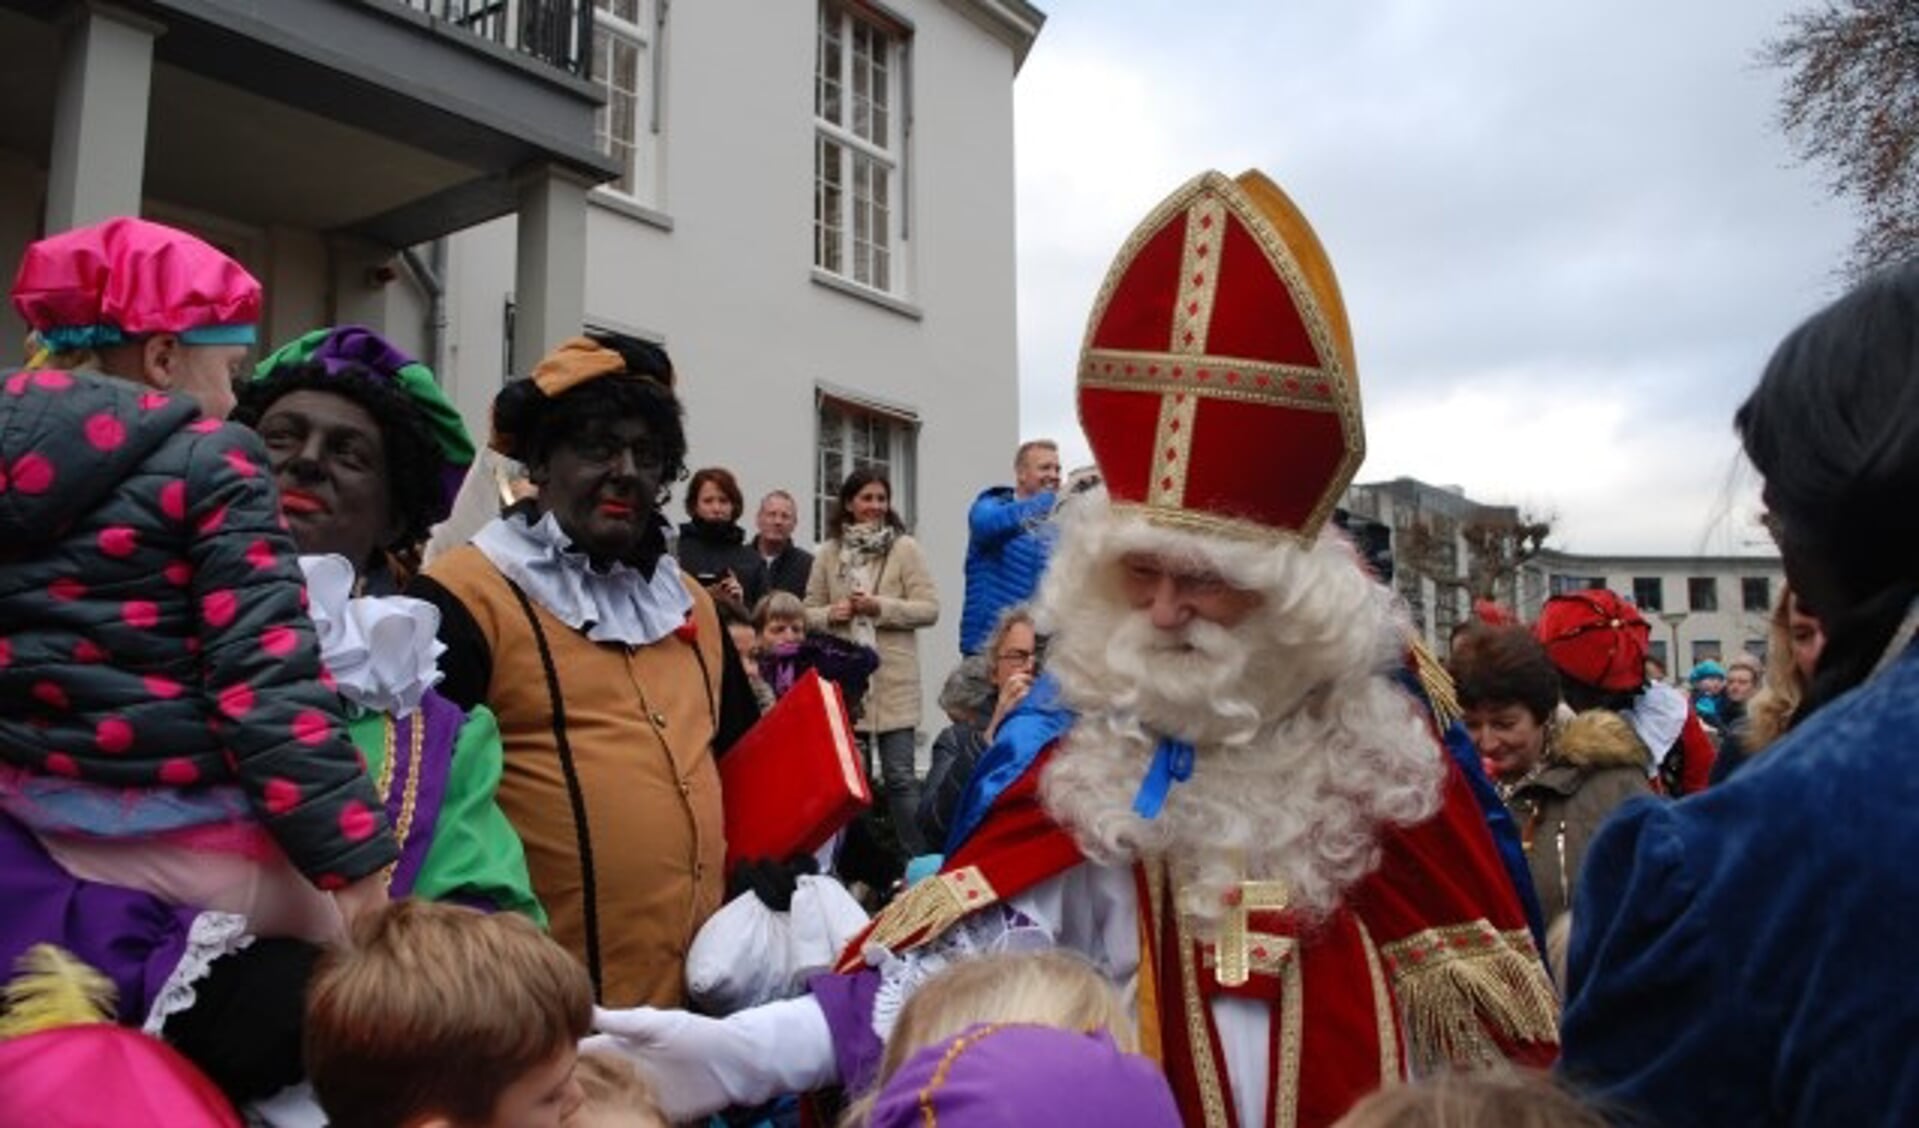 De Sint komt dit jaar voor de honderdste keer naar Bilthoven en neemt zijn Glutenvrije Piet mee. FOTO: archief intocht 2016